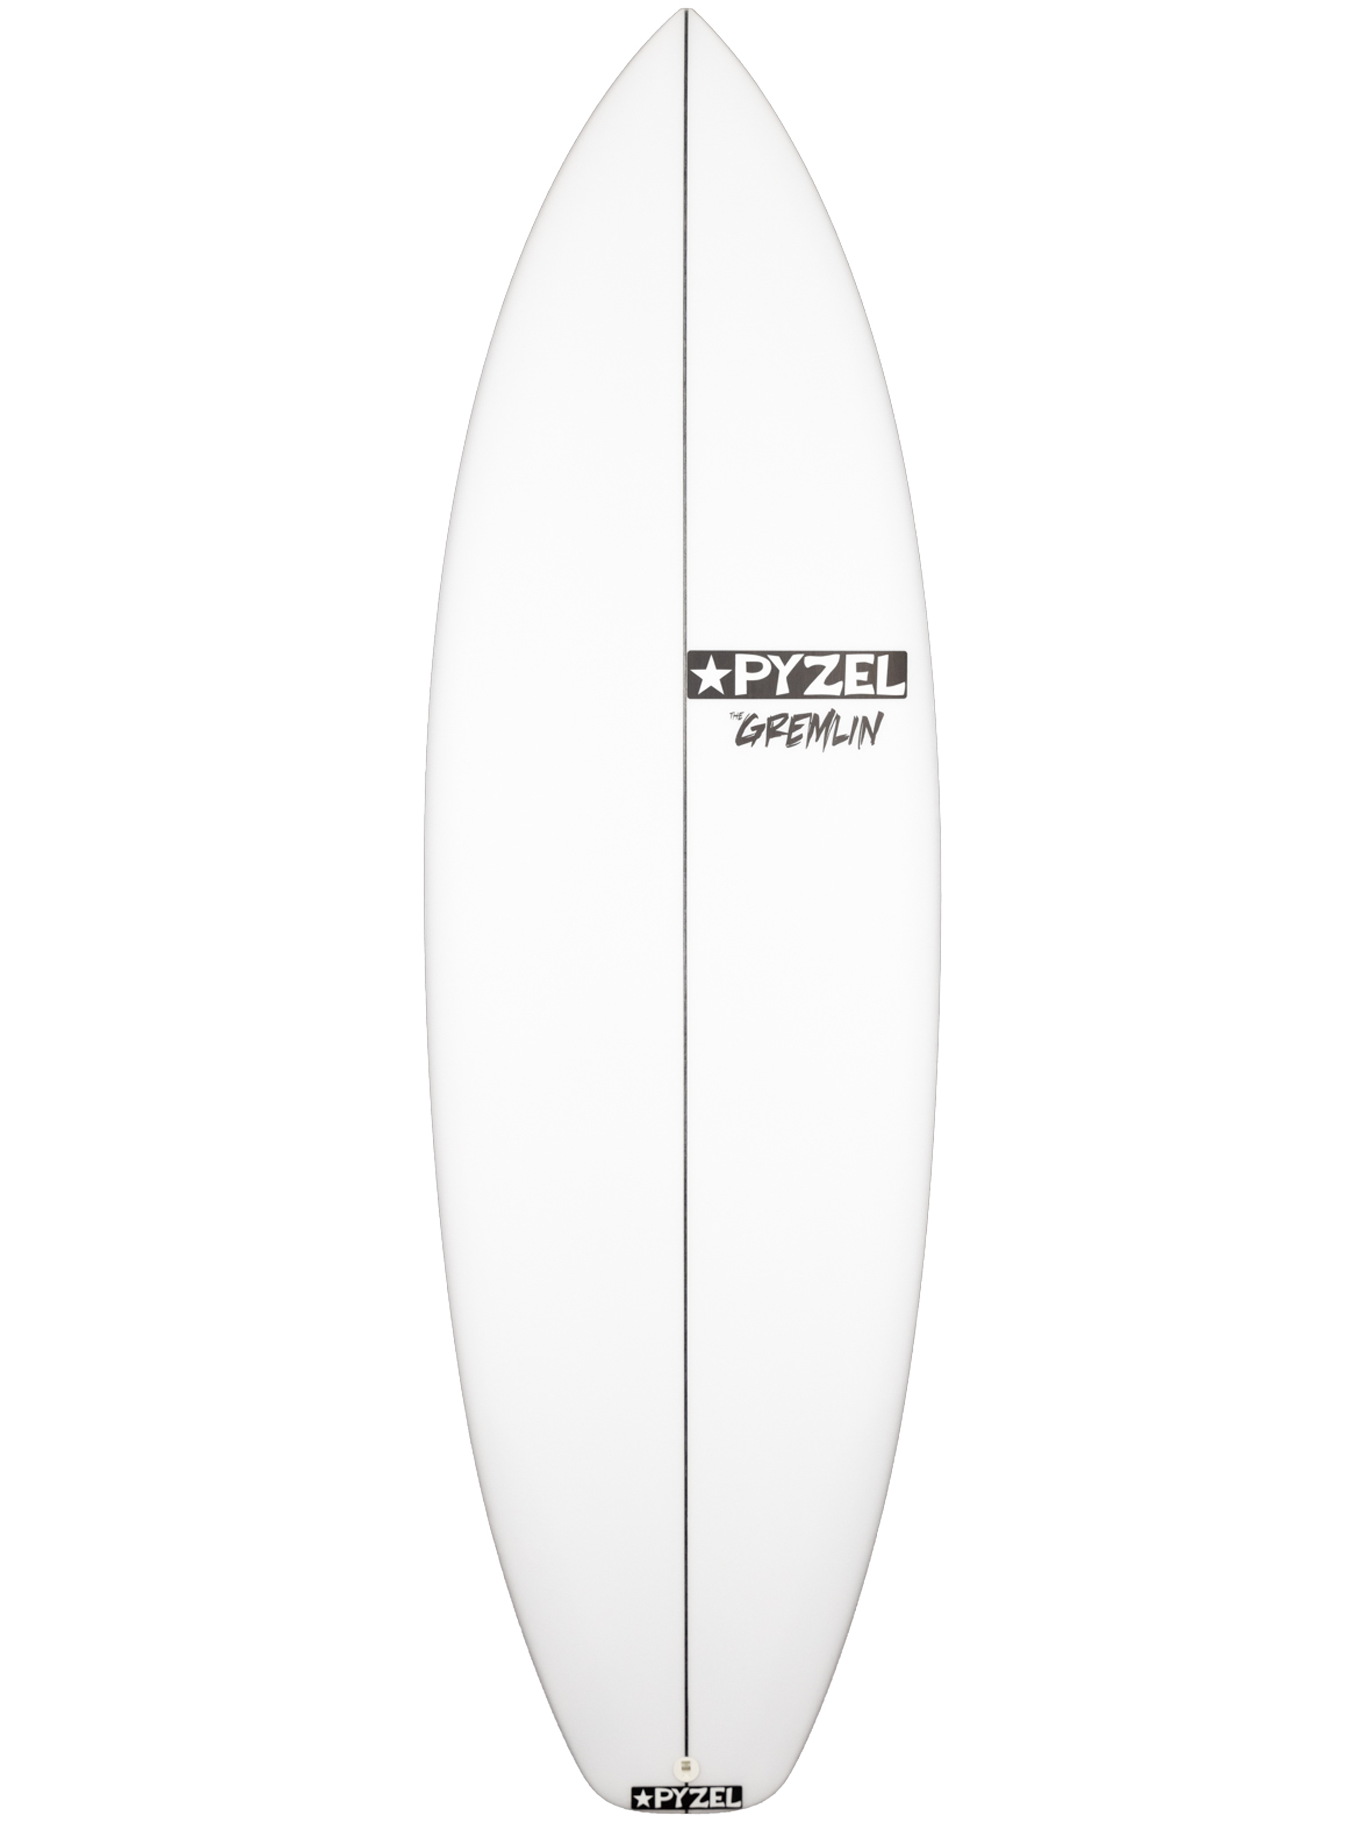 Tot ziens geef de bloem water ga winkelen Pyzel Surfboards - Gremlin